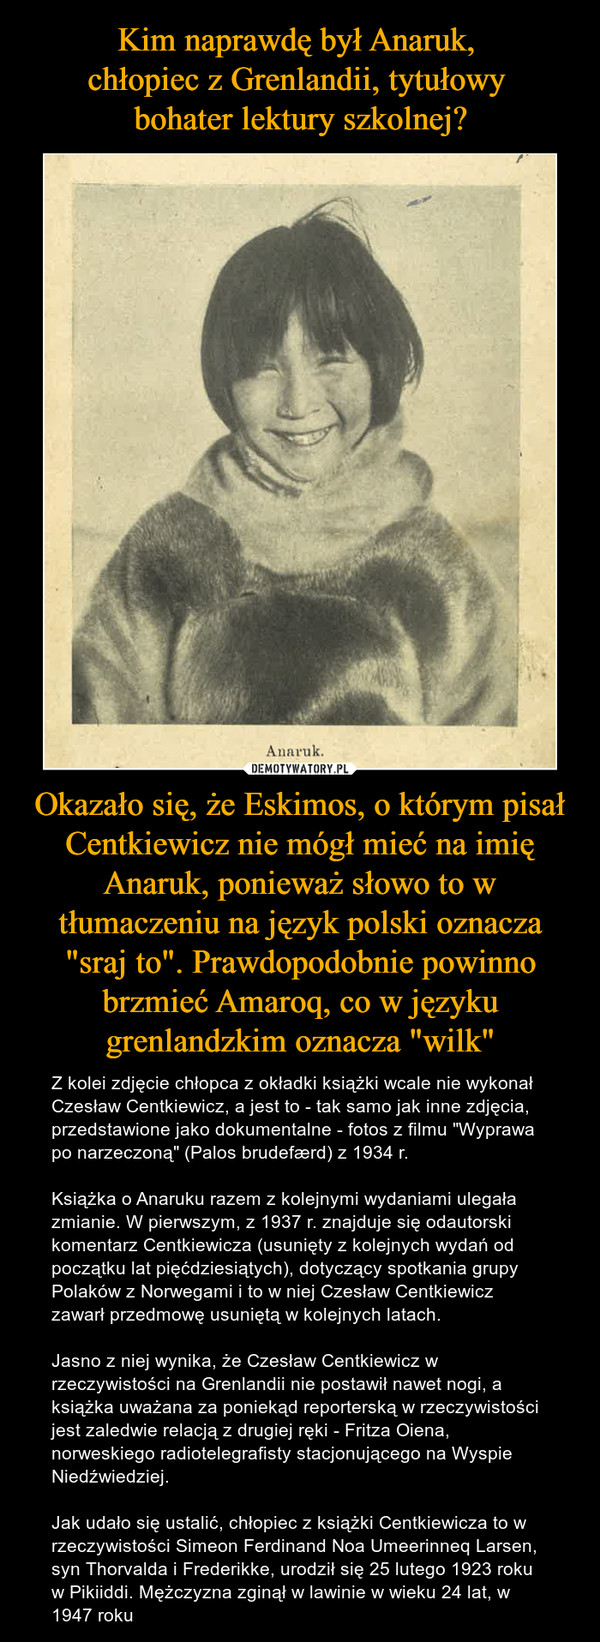 Okazało się, że Eskimos, o którym pisał Centkiewicz nie mógł mieć na imię Anaruk, ponieważ słowo to w tłumaczeniu na język polski oznacza "sraj to". Prawdopodobnie powinno brzmieć Amaroq, co w języku grenlandzkim oznacza "wilk" – Z kolei zdjęcie chłopca z okładki książki wcale nie wykonał Czesław Centkiewicz, a jest to - tak samo jak inne zdjęcia, przedstawione jako dokumentalne - fotos z filmu "Wyprawa po narzeczoną" (Palos brudefærd) z 1934 r.Książka o Anaruku razem z kolejnymi wydaniami ulegała zmianie. W pierwszym, z 1937 r. znajduje się odautorski komentarz Centkiewicza (usunięty z kolejnych wydań od początku lat pięćdziesiątych), dotyczący spotkania grupy Polaków z Norwegami i to w niej Czesław Centkiewicz zawarł przedmowę usuniętą w kolejnych latach.Jasno z niej wynika, że Czesław Centkiewicz w rzeczywistości na Grenlandii nie postawił nawet nogi, a książka uważana za poniekąd reporterską w rzeczywistości jest zaledwie relacją z drugiej ręki - Fritza Oiena, norweskiego radiotelegrafisty stacjonującego na Wyspie Niedźwiedziej.Jak udało się ustalić, chłopiec z książki Centkiewicza to w rzeczywistości Simeon Ferdinand Noa Umeerinneq Larsen, syn Thorvalda i Frederikke, urodził się 25 lutego 1923 roku w Pikiiddi. Mężczyzna zginął w lawinie w wieku 24 lat, w 1947 roku 